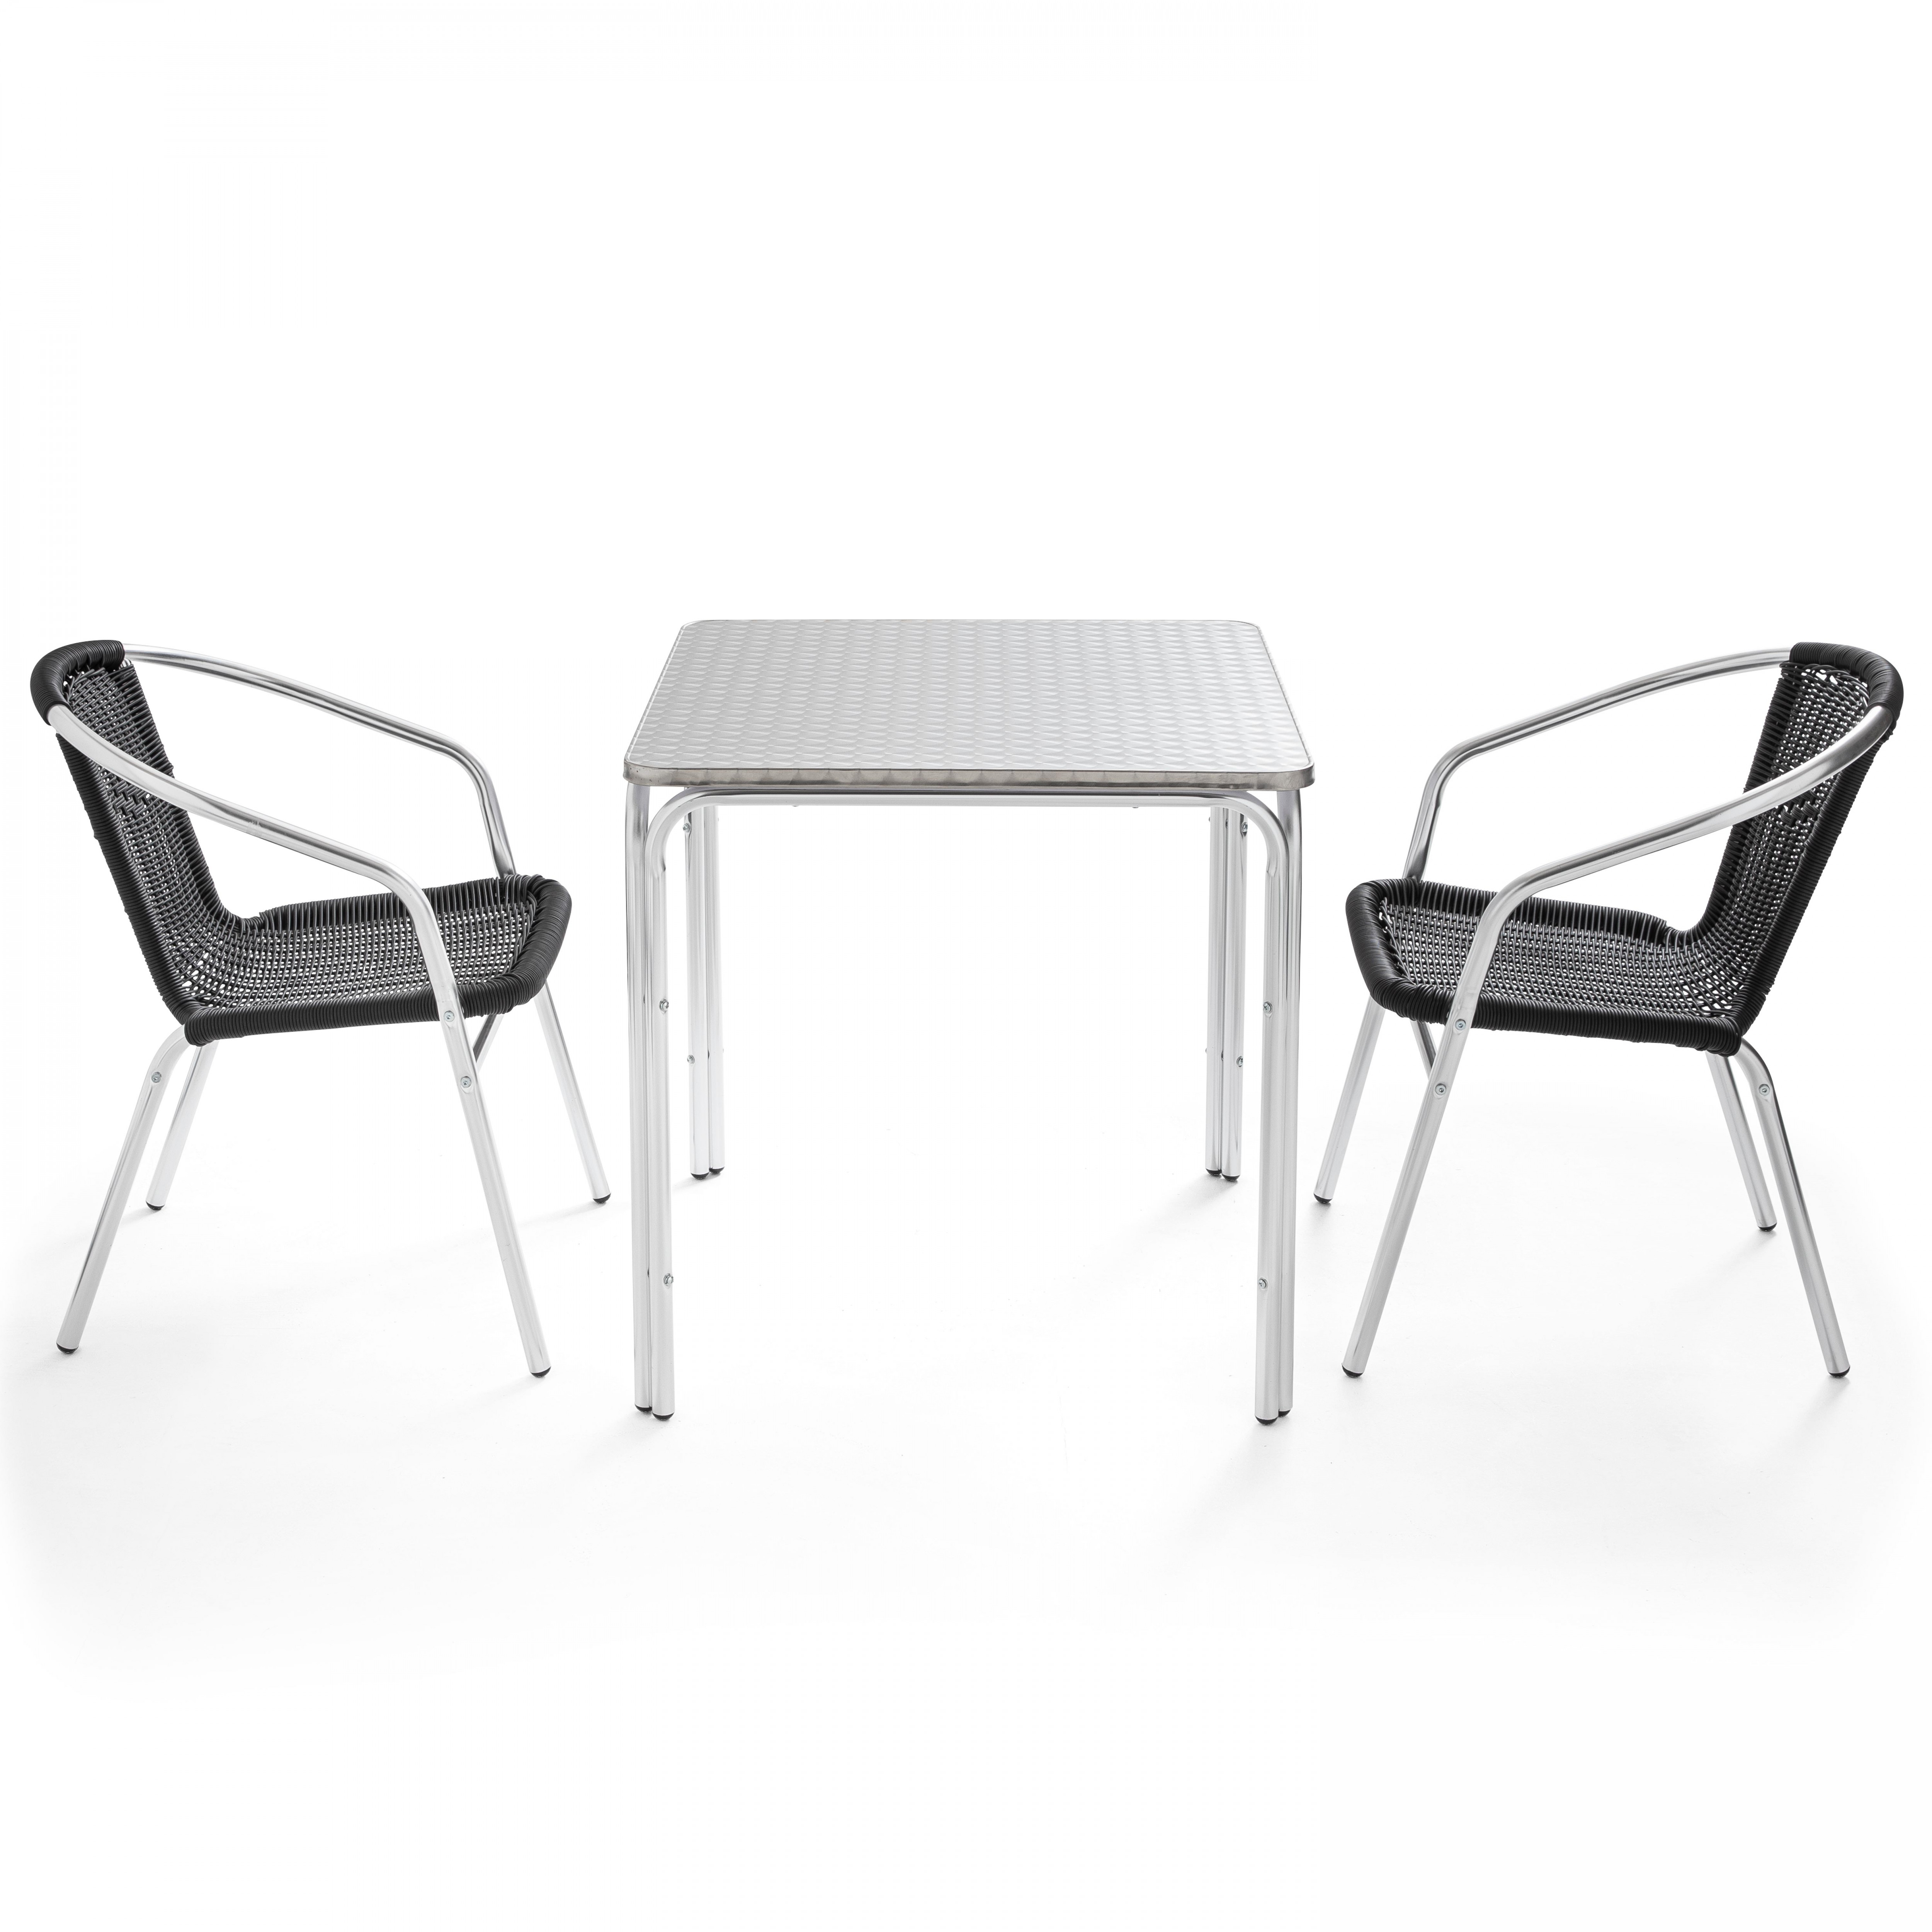 Table de jardin carrée en aluminium avec 2 chaises noir